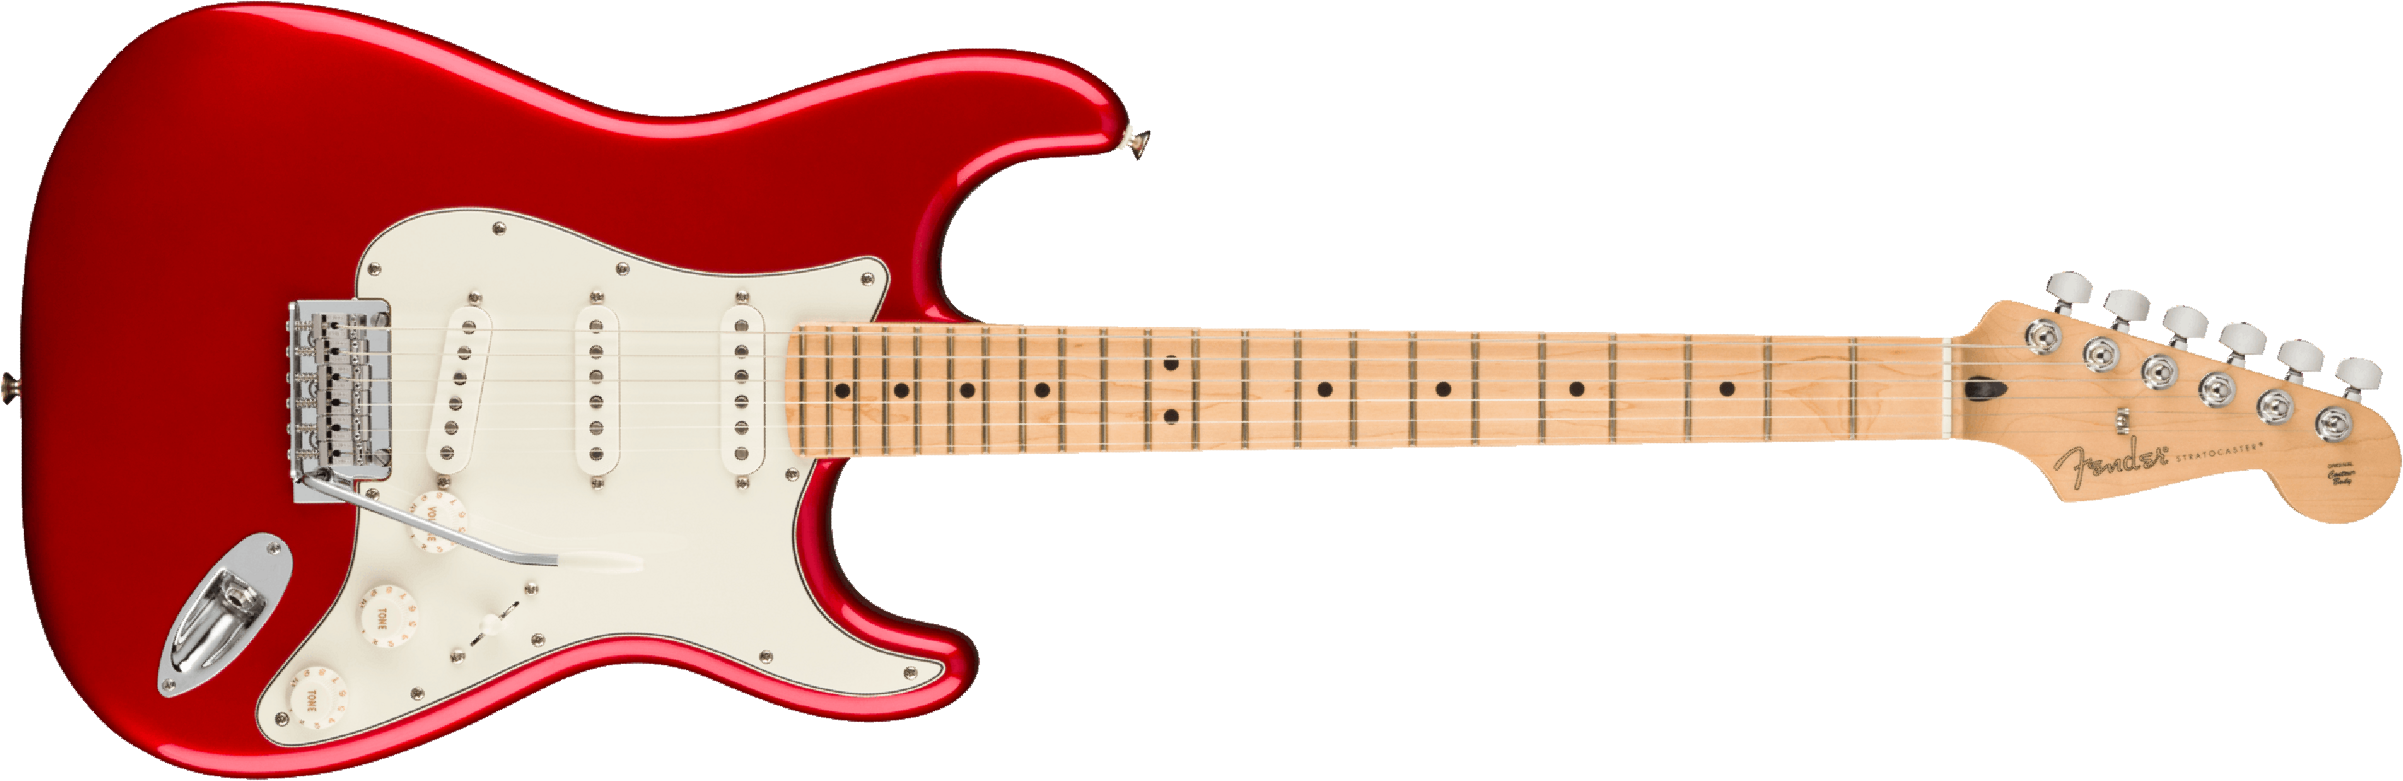 Fender Strat Player Mex 2023 3s Trem Mn - Candy Apple Red - Elektrische gitaar in Str-vorm - Main picture